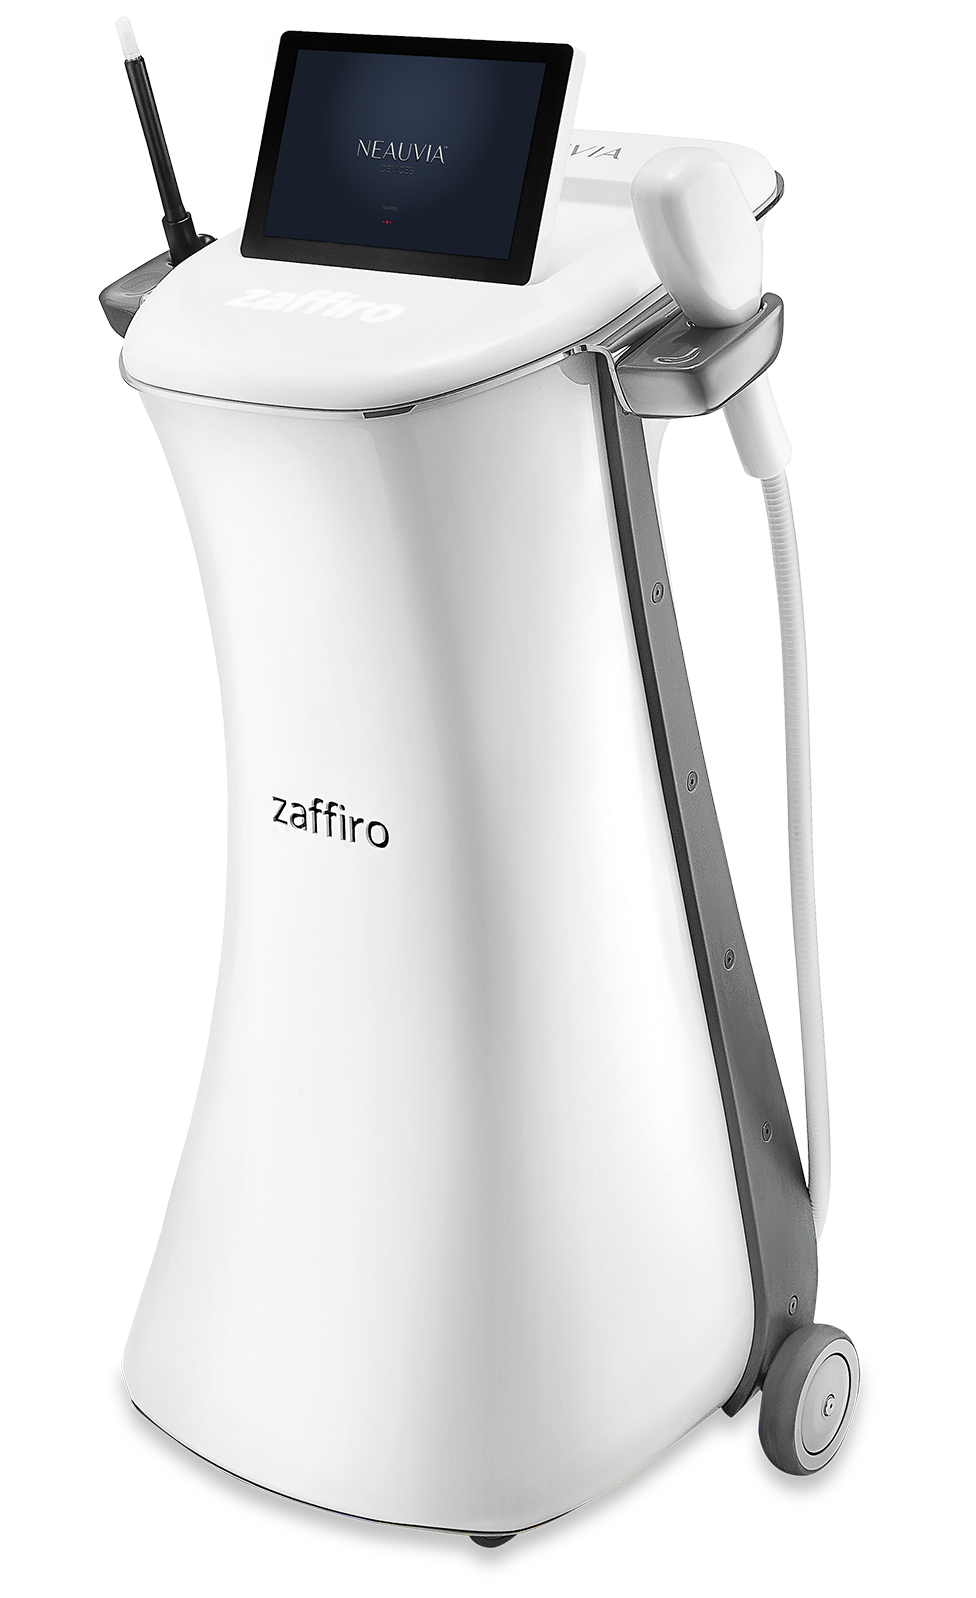 ZAFFIRO é um dispositivo médico inovador que combina hidroesfoliação e termolifting infravermelho para iluminar e firmar a pele